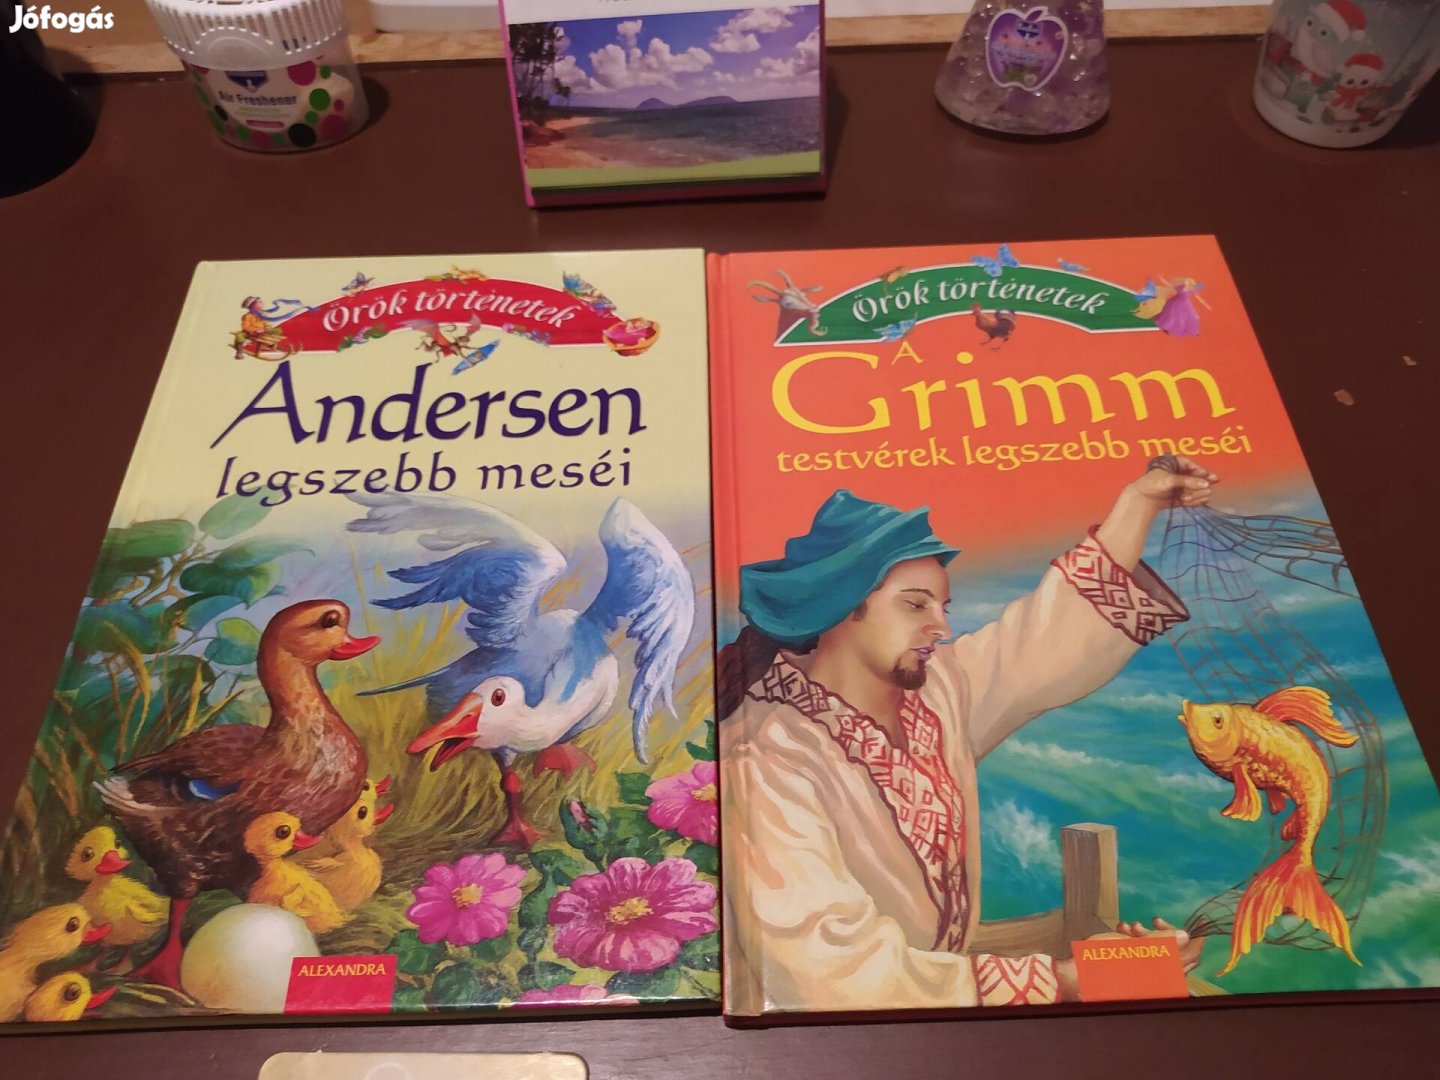 Andersen és Grimm mesekönyvek 